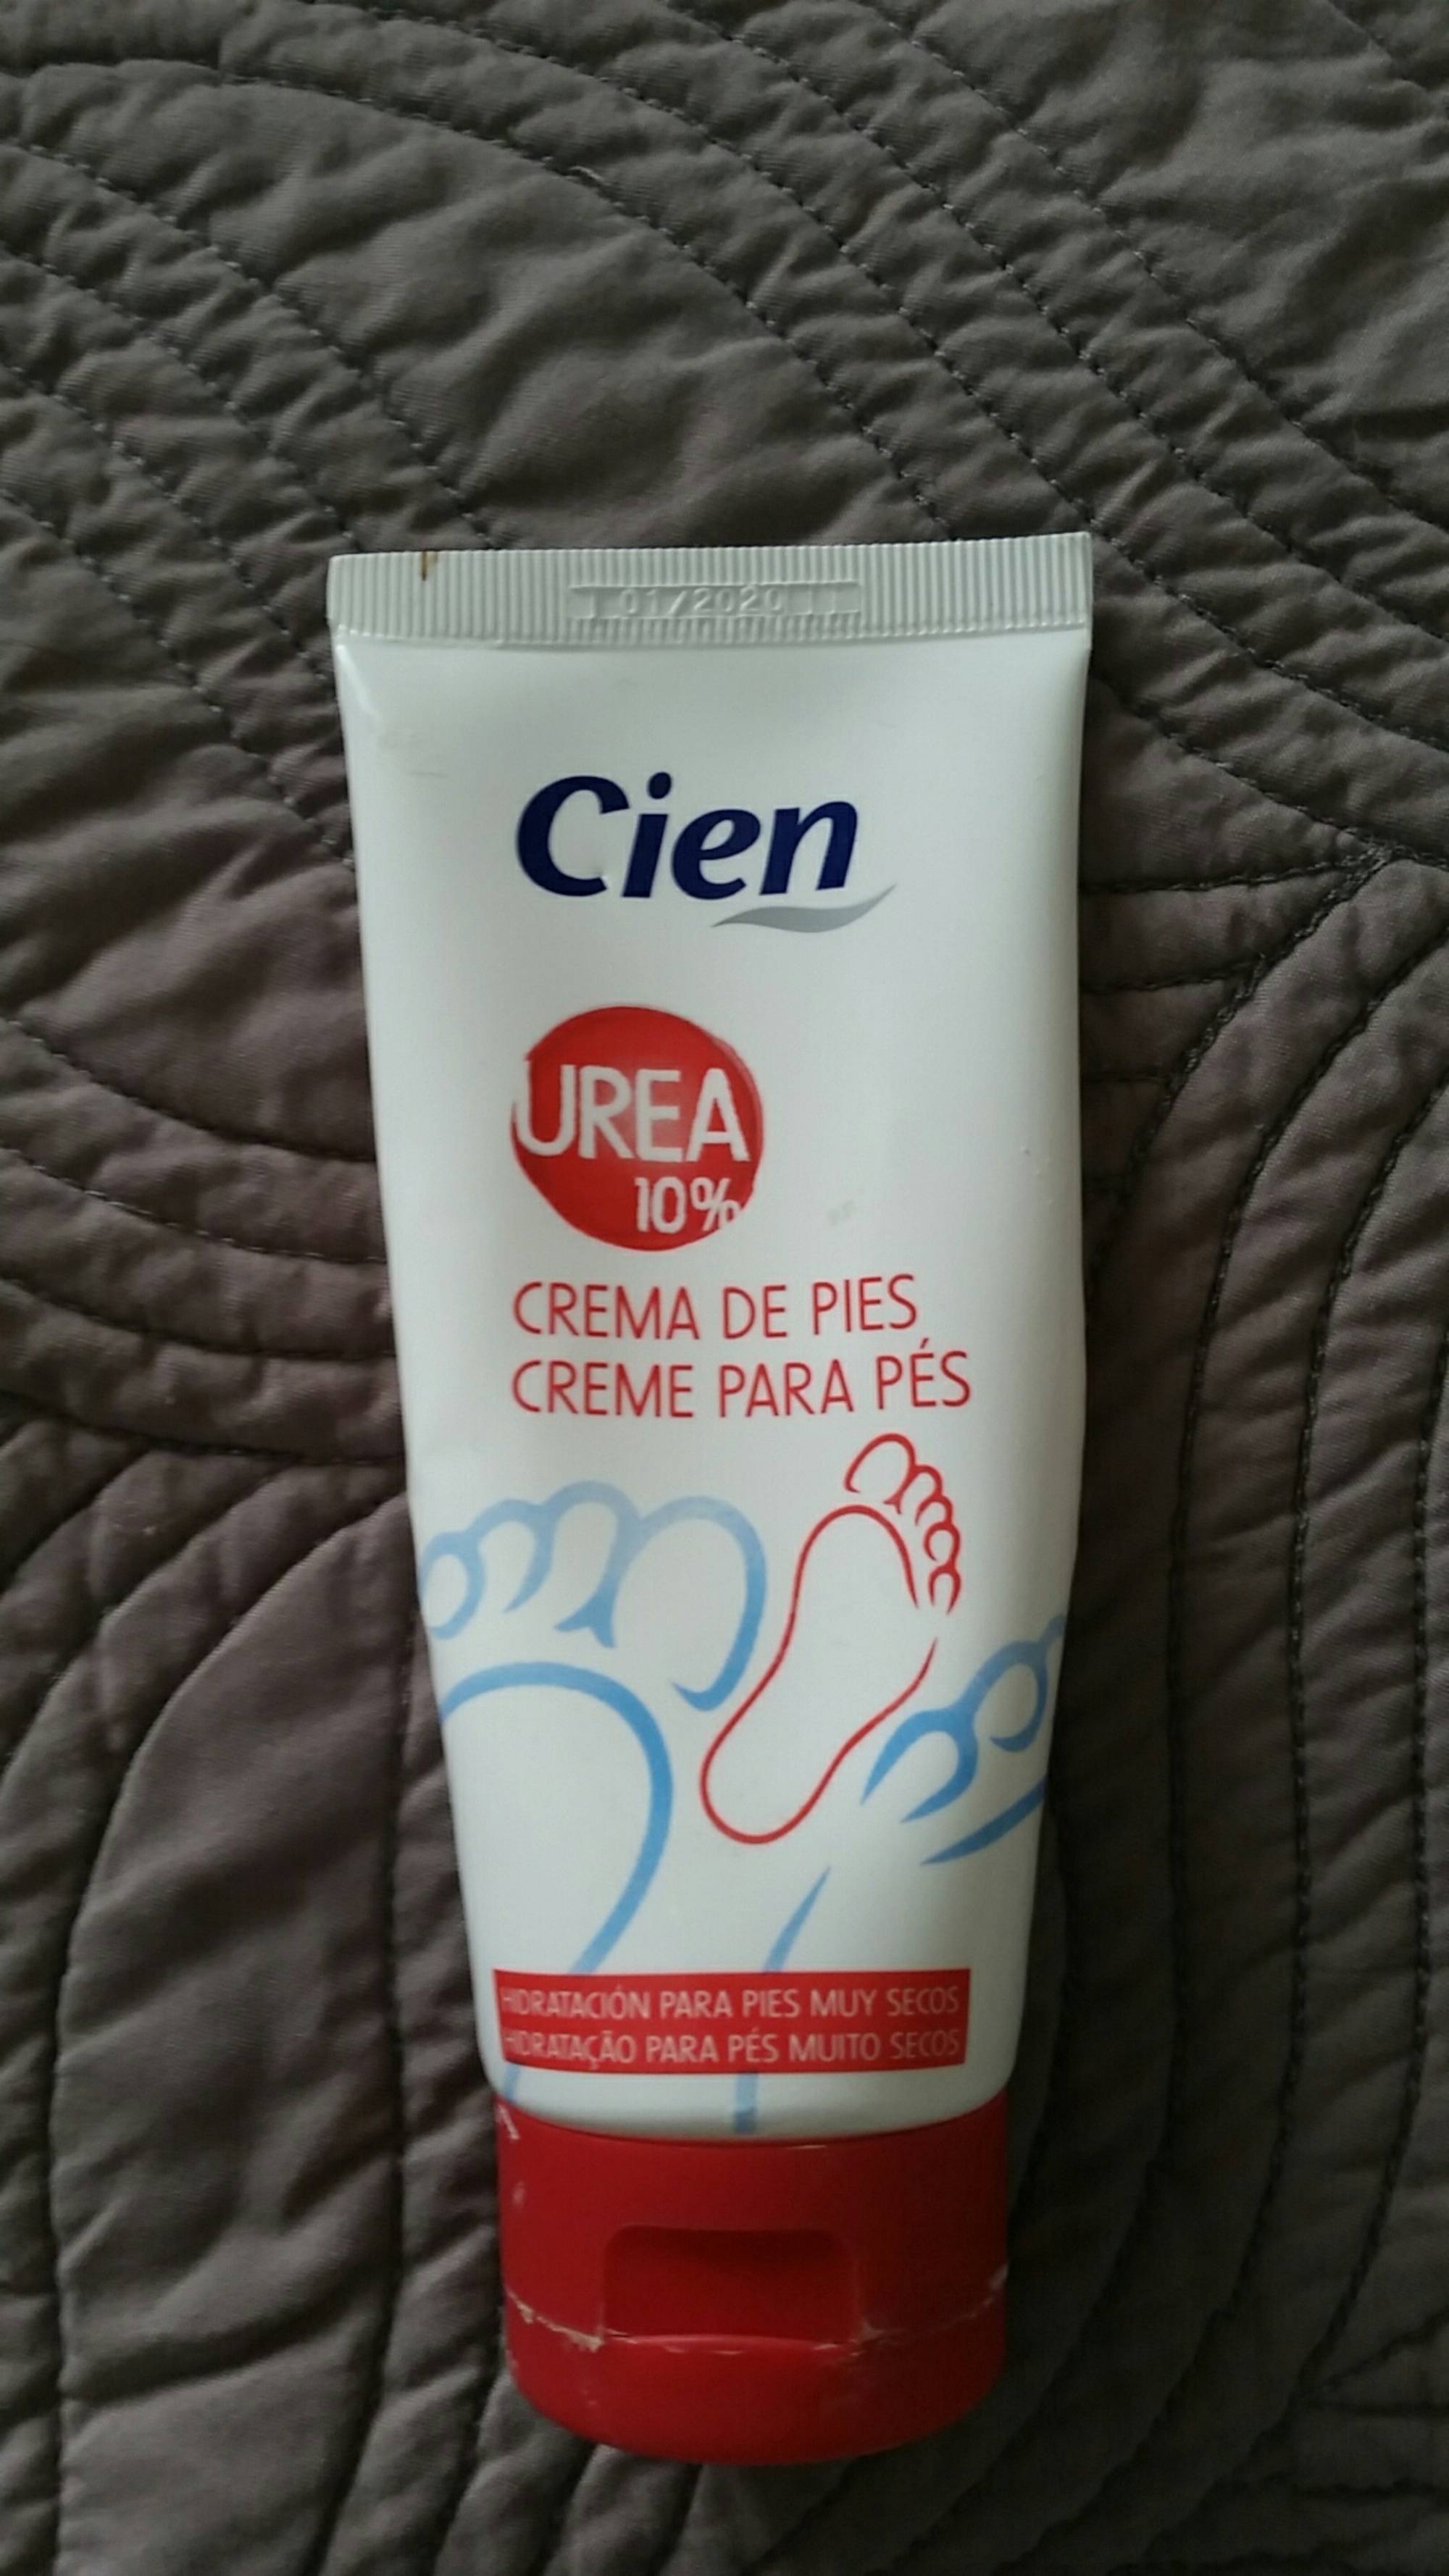 CIEN - Urea 10% - Crema de pies